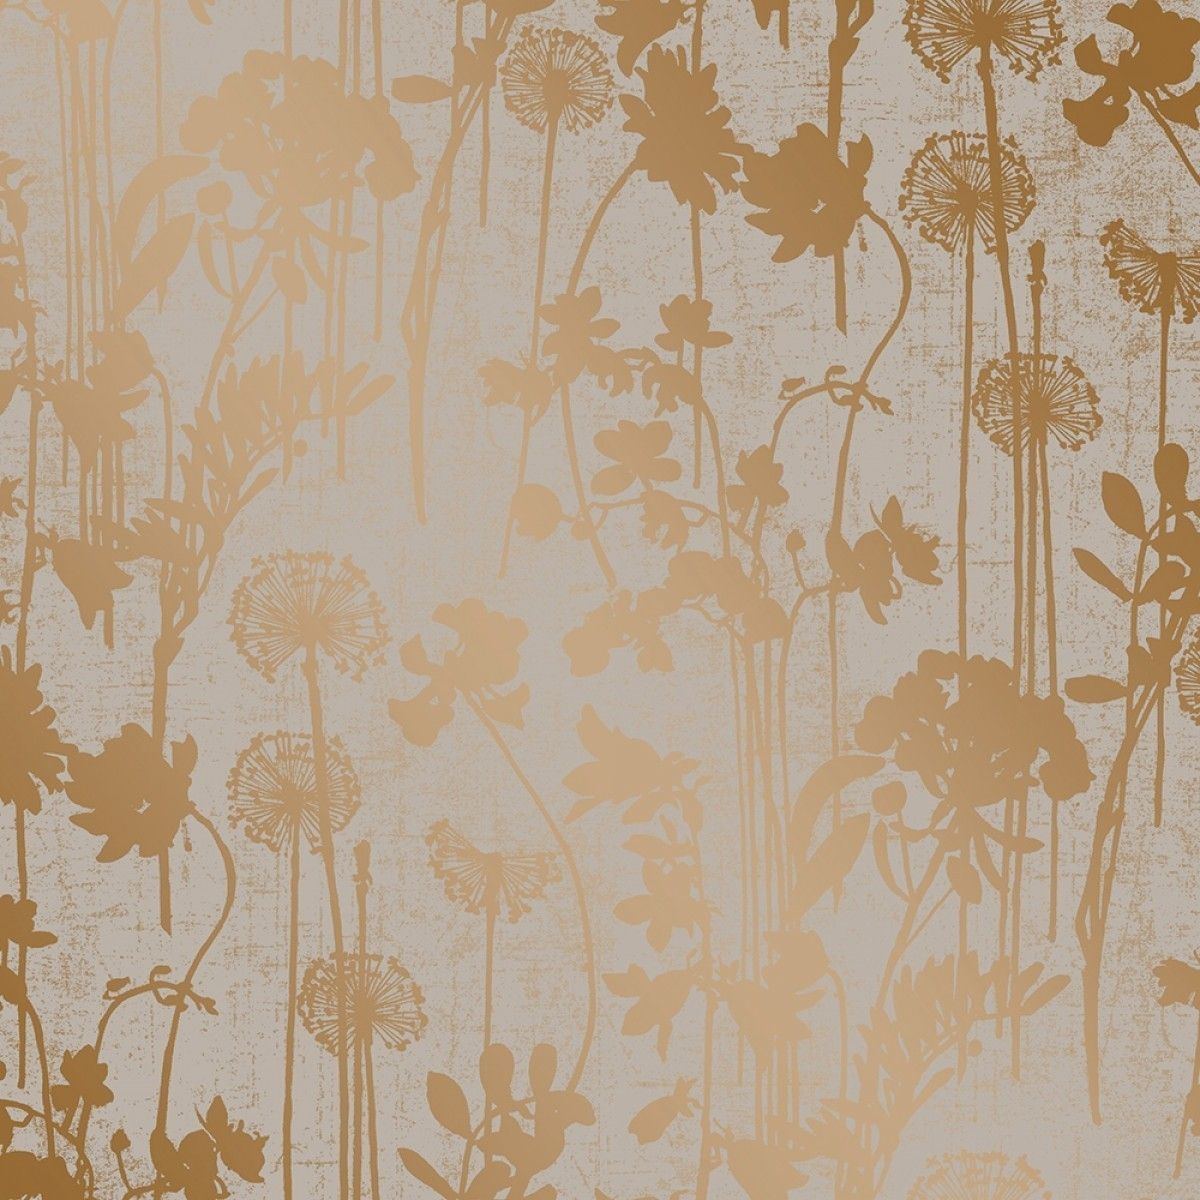 Distressed Floral Grey Metallic Copper DI532 Self-Adhesive Wallpaper